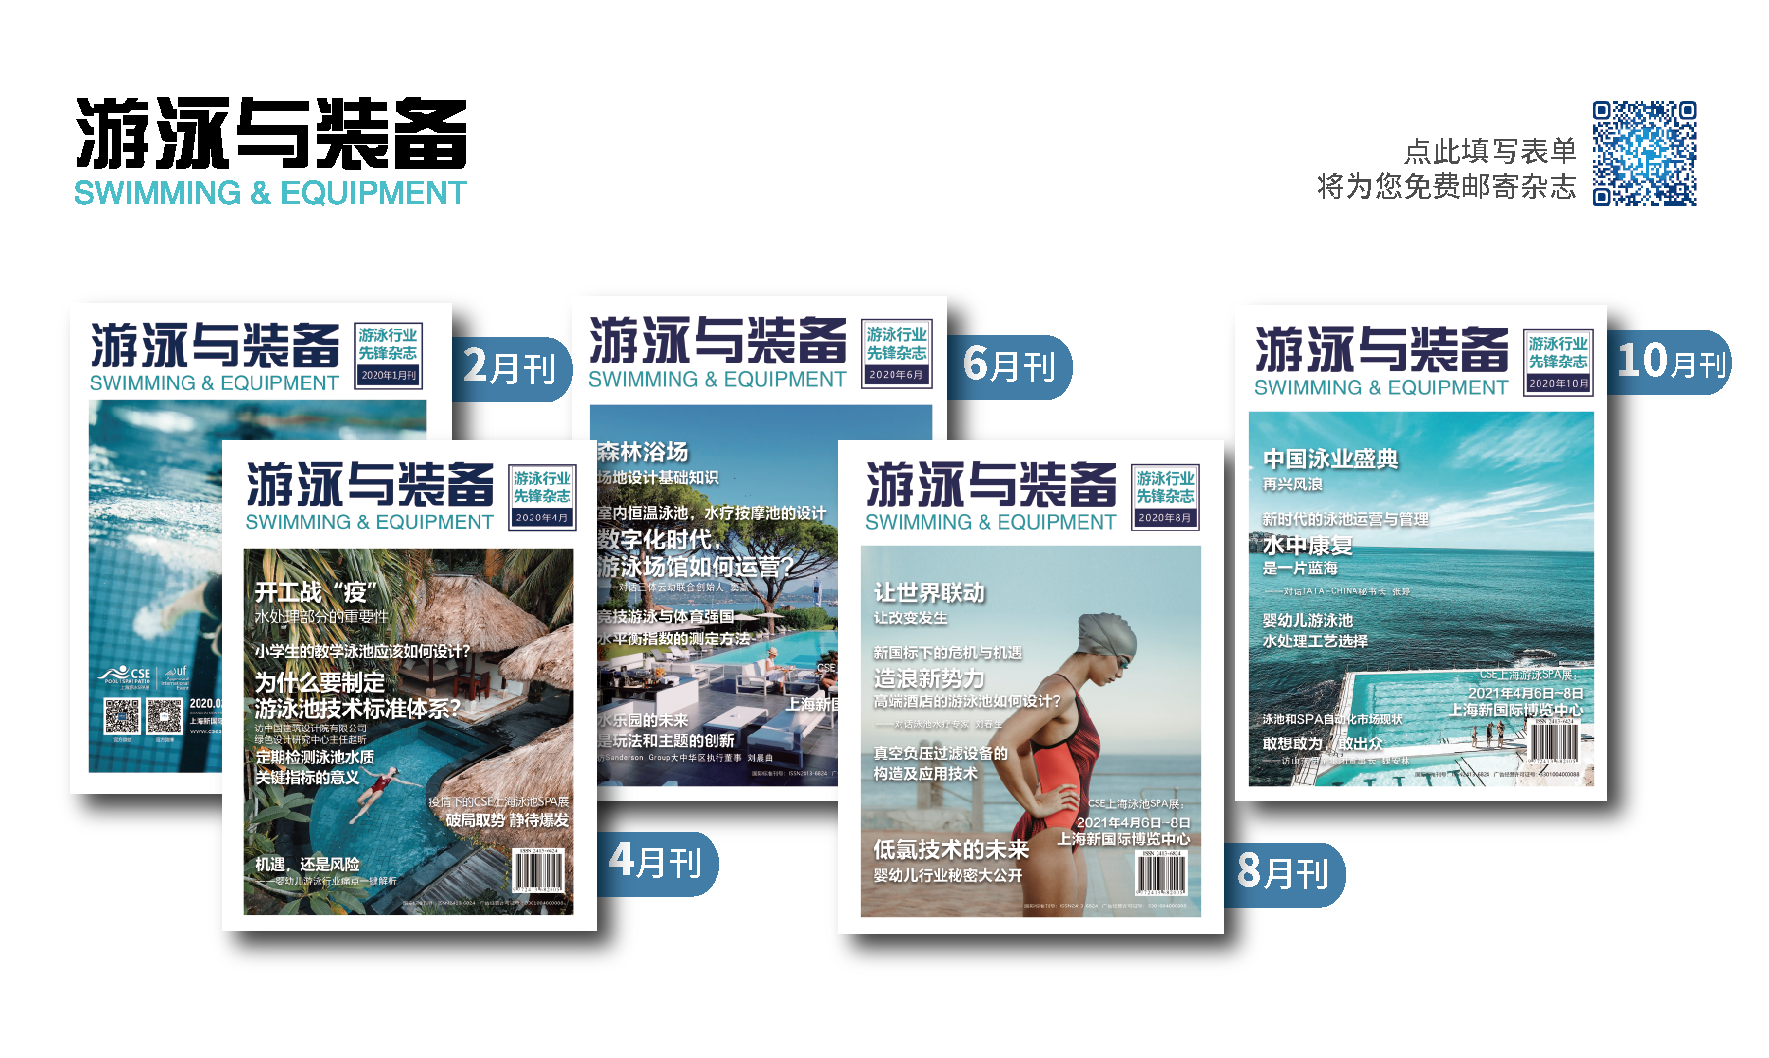 游泳与装备杂志刊物封面汇总202002-10 低像素_画板 1_画板 1.png